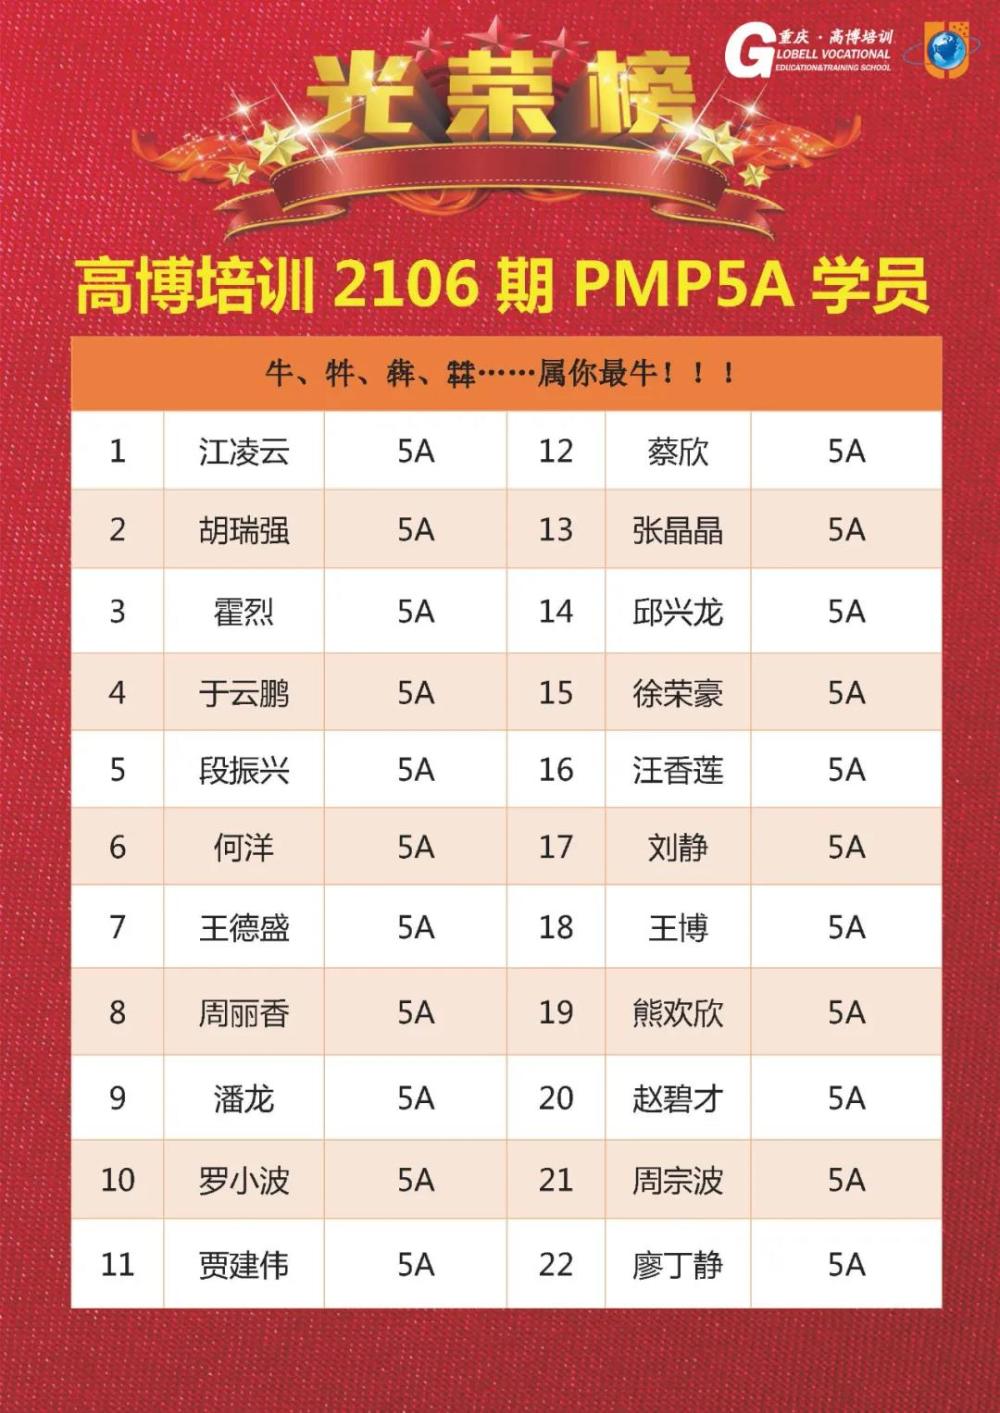 恭祝高博培训PMP学员喜提5A优异成绩！！！